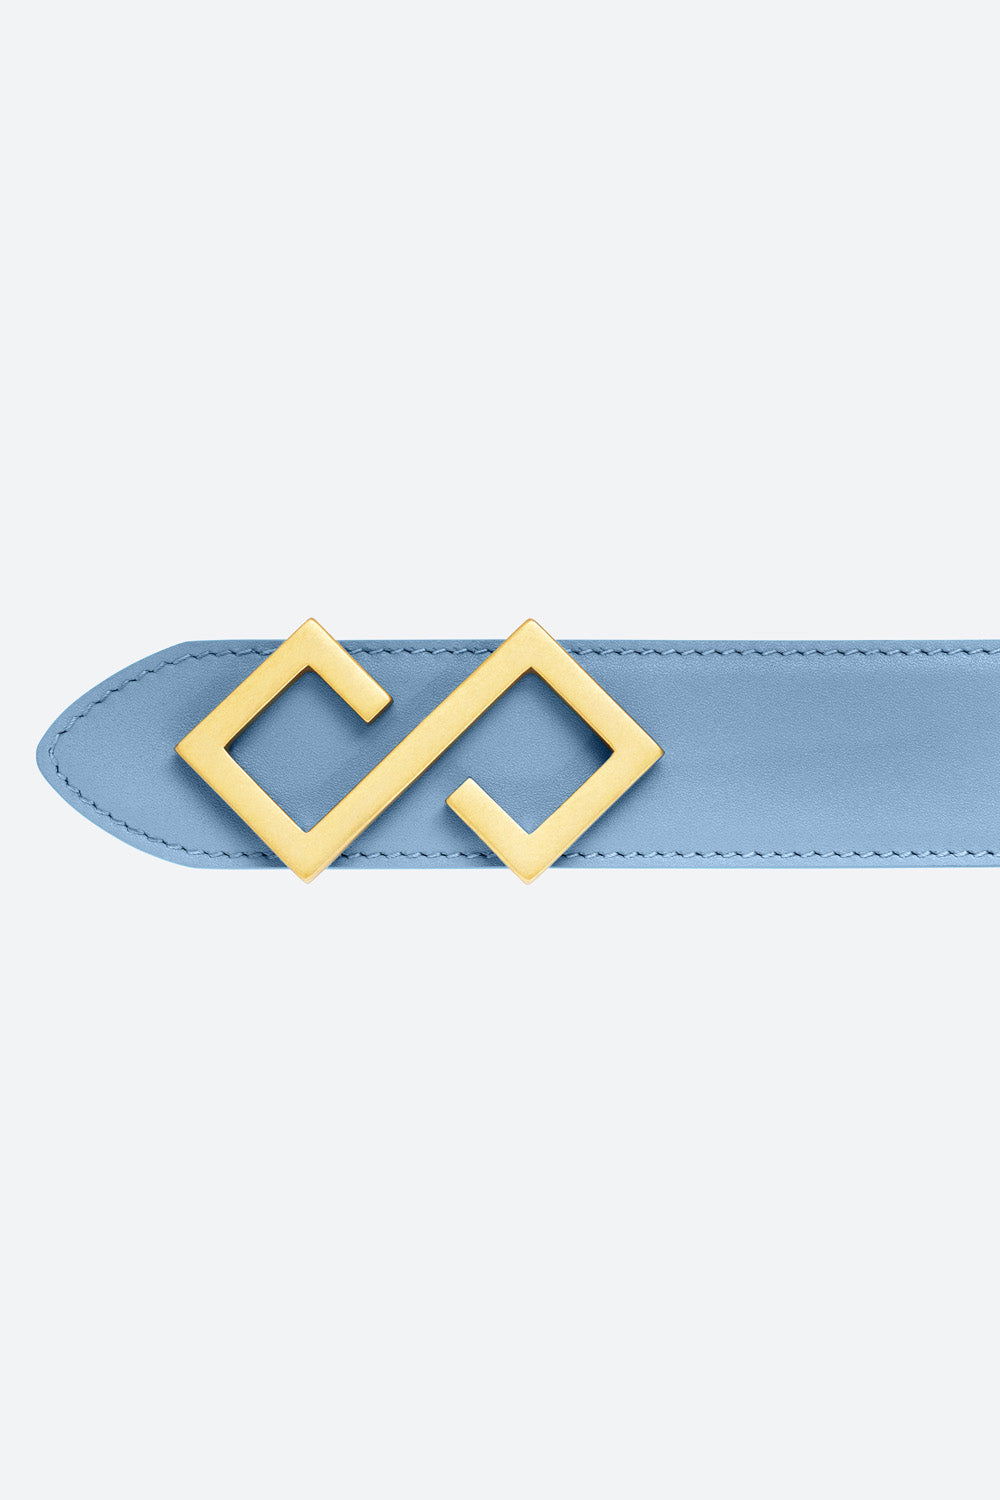 Women's Alvear Belt in Sky Blue, Gold-toned Buckle